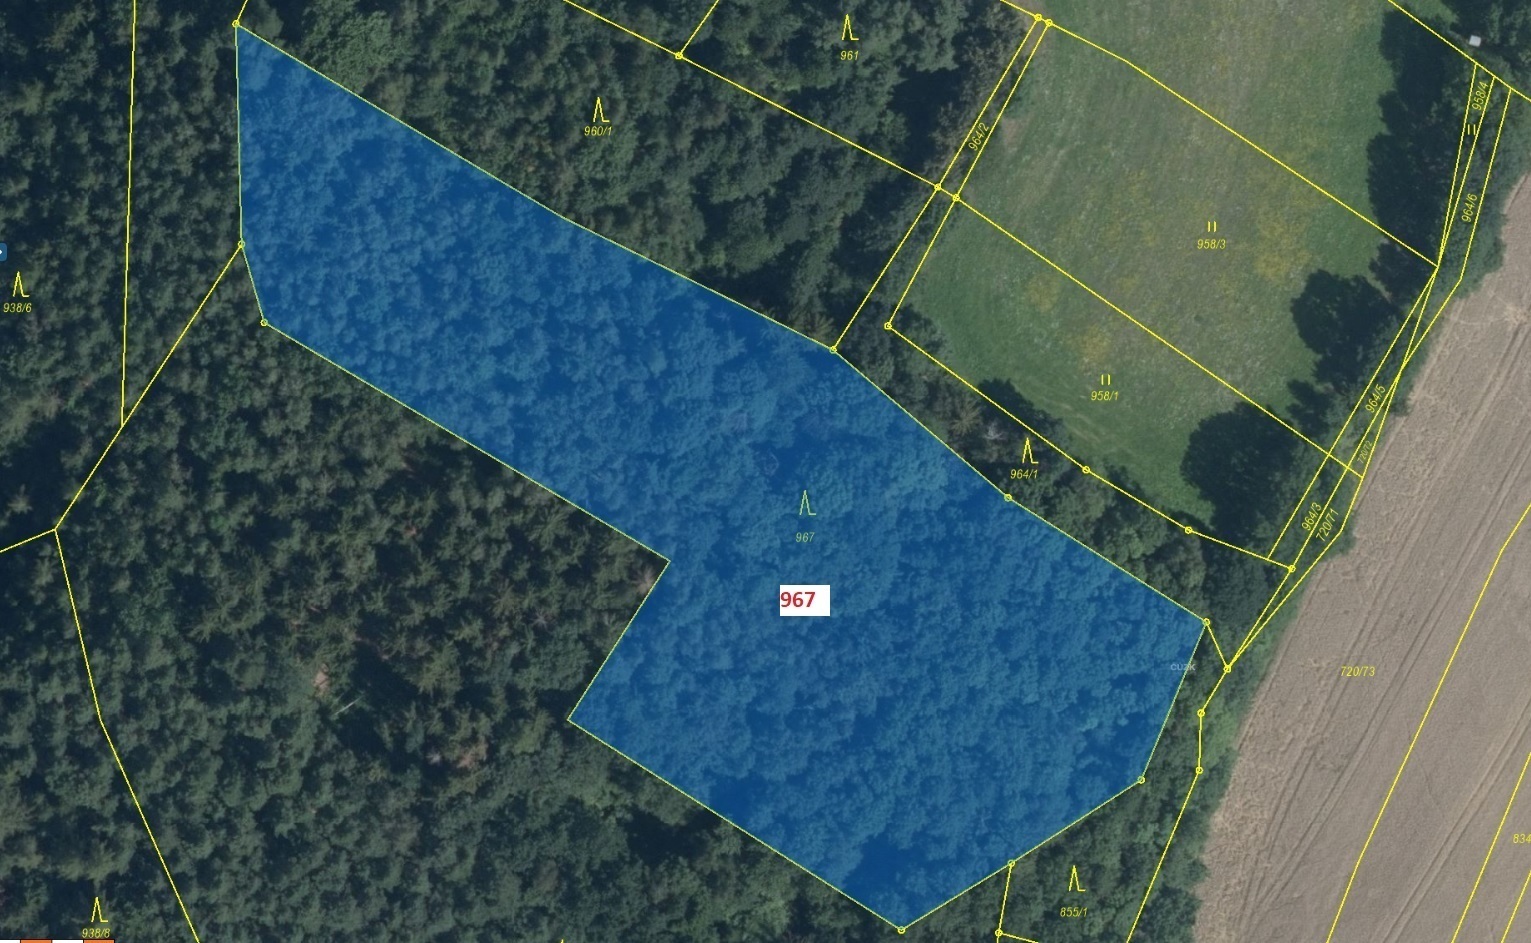 Lesní pozemek o výměře 9 759 m2, podíl 1/1, k.ú. Rovensko, okres Šumperk